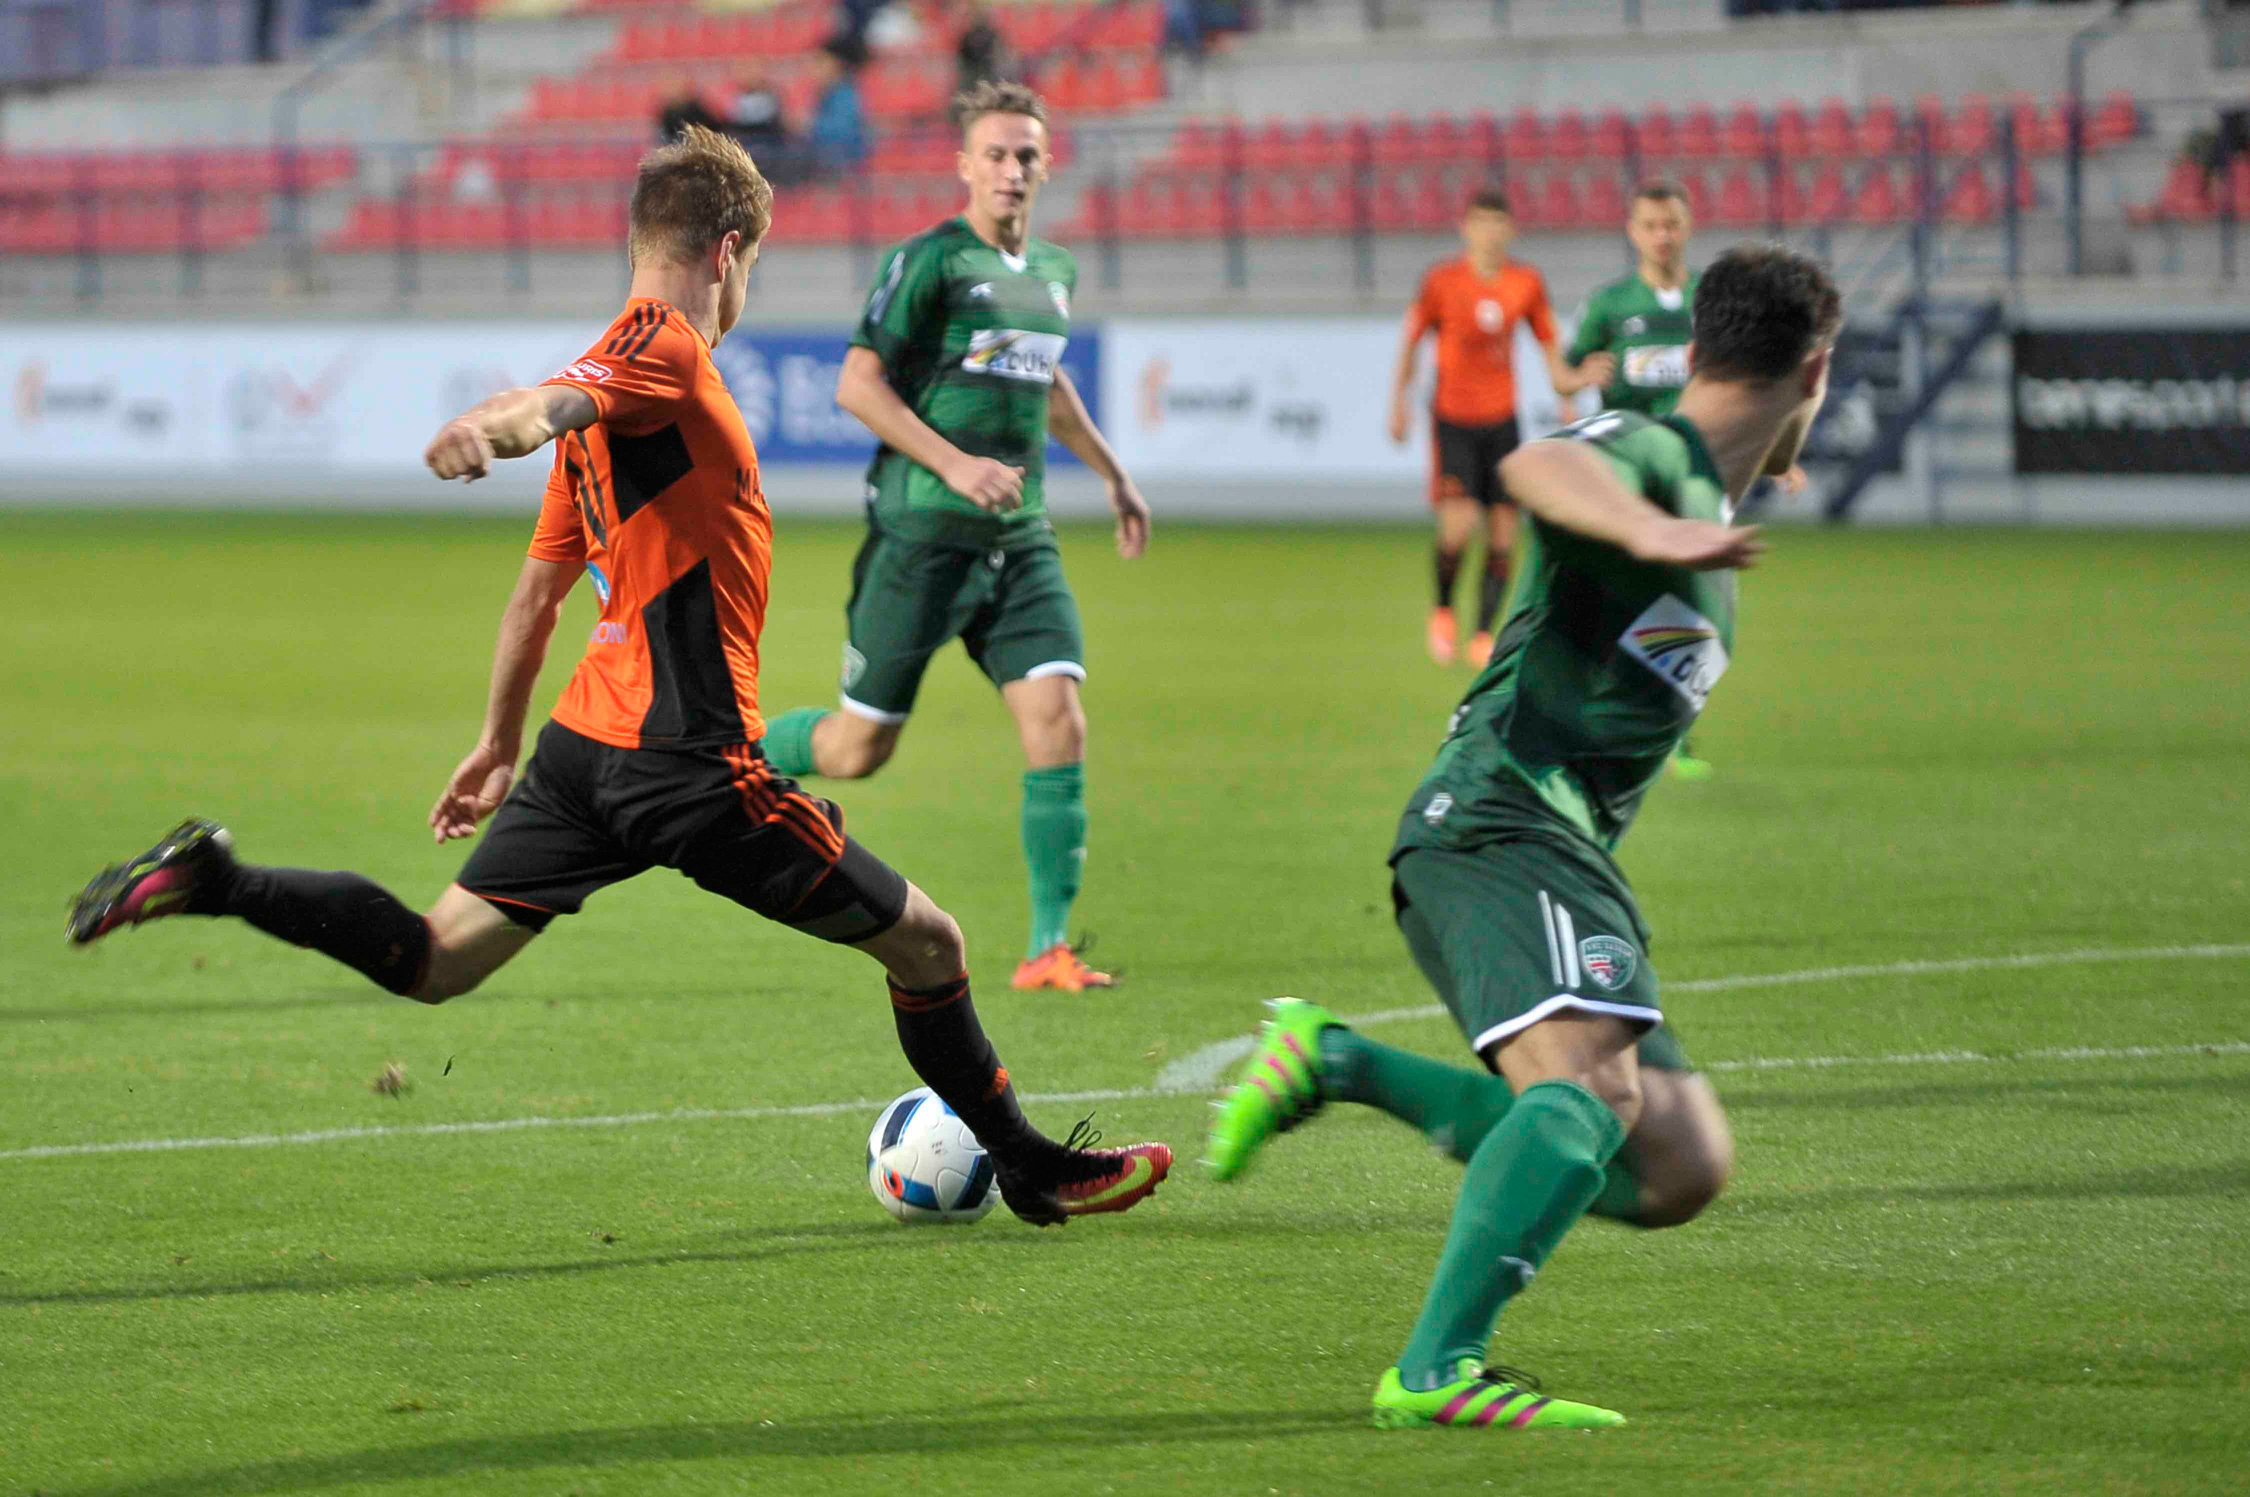 Martin Chrien strieľa svoj prvý gól v oranžovom drese.